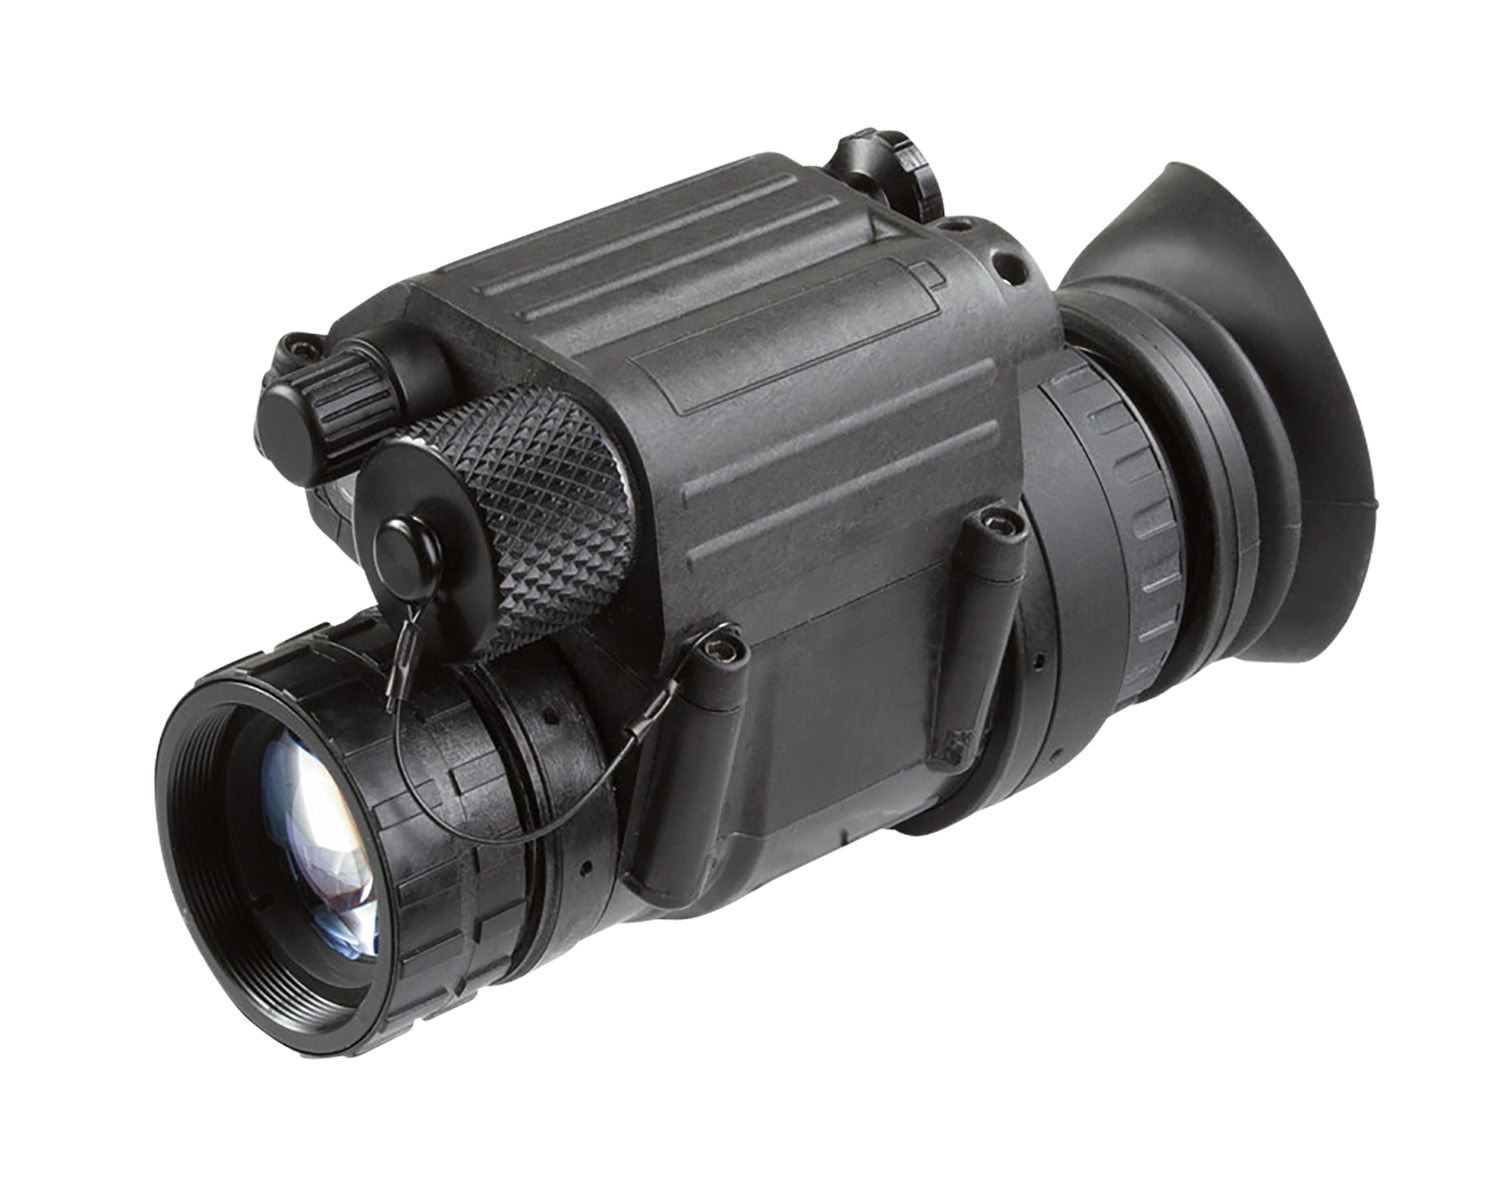 AGM Global Vision 11P14122483011 PVS-14 NL1 Black | 1 X 26mm